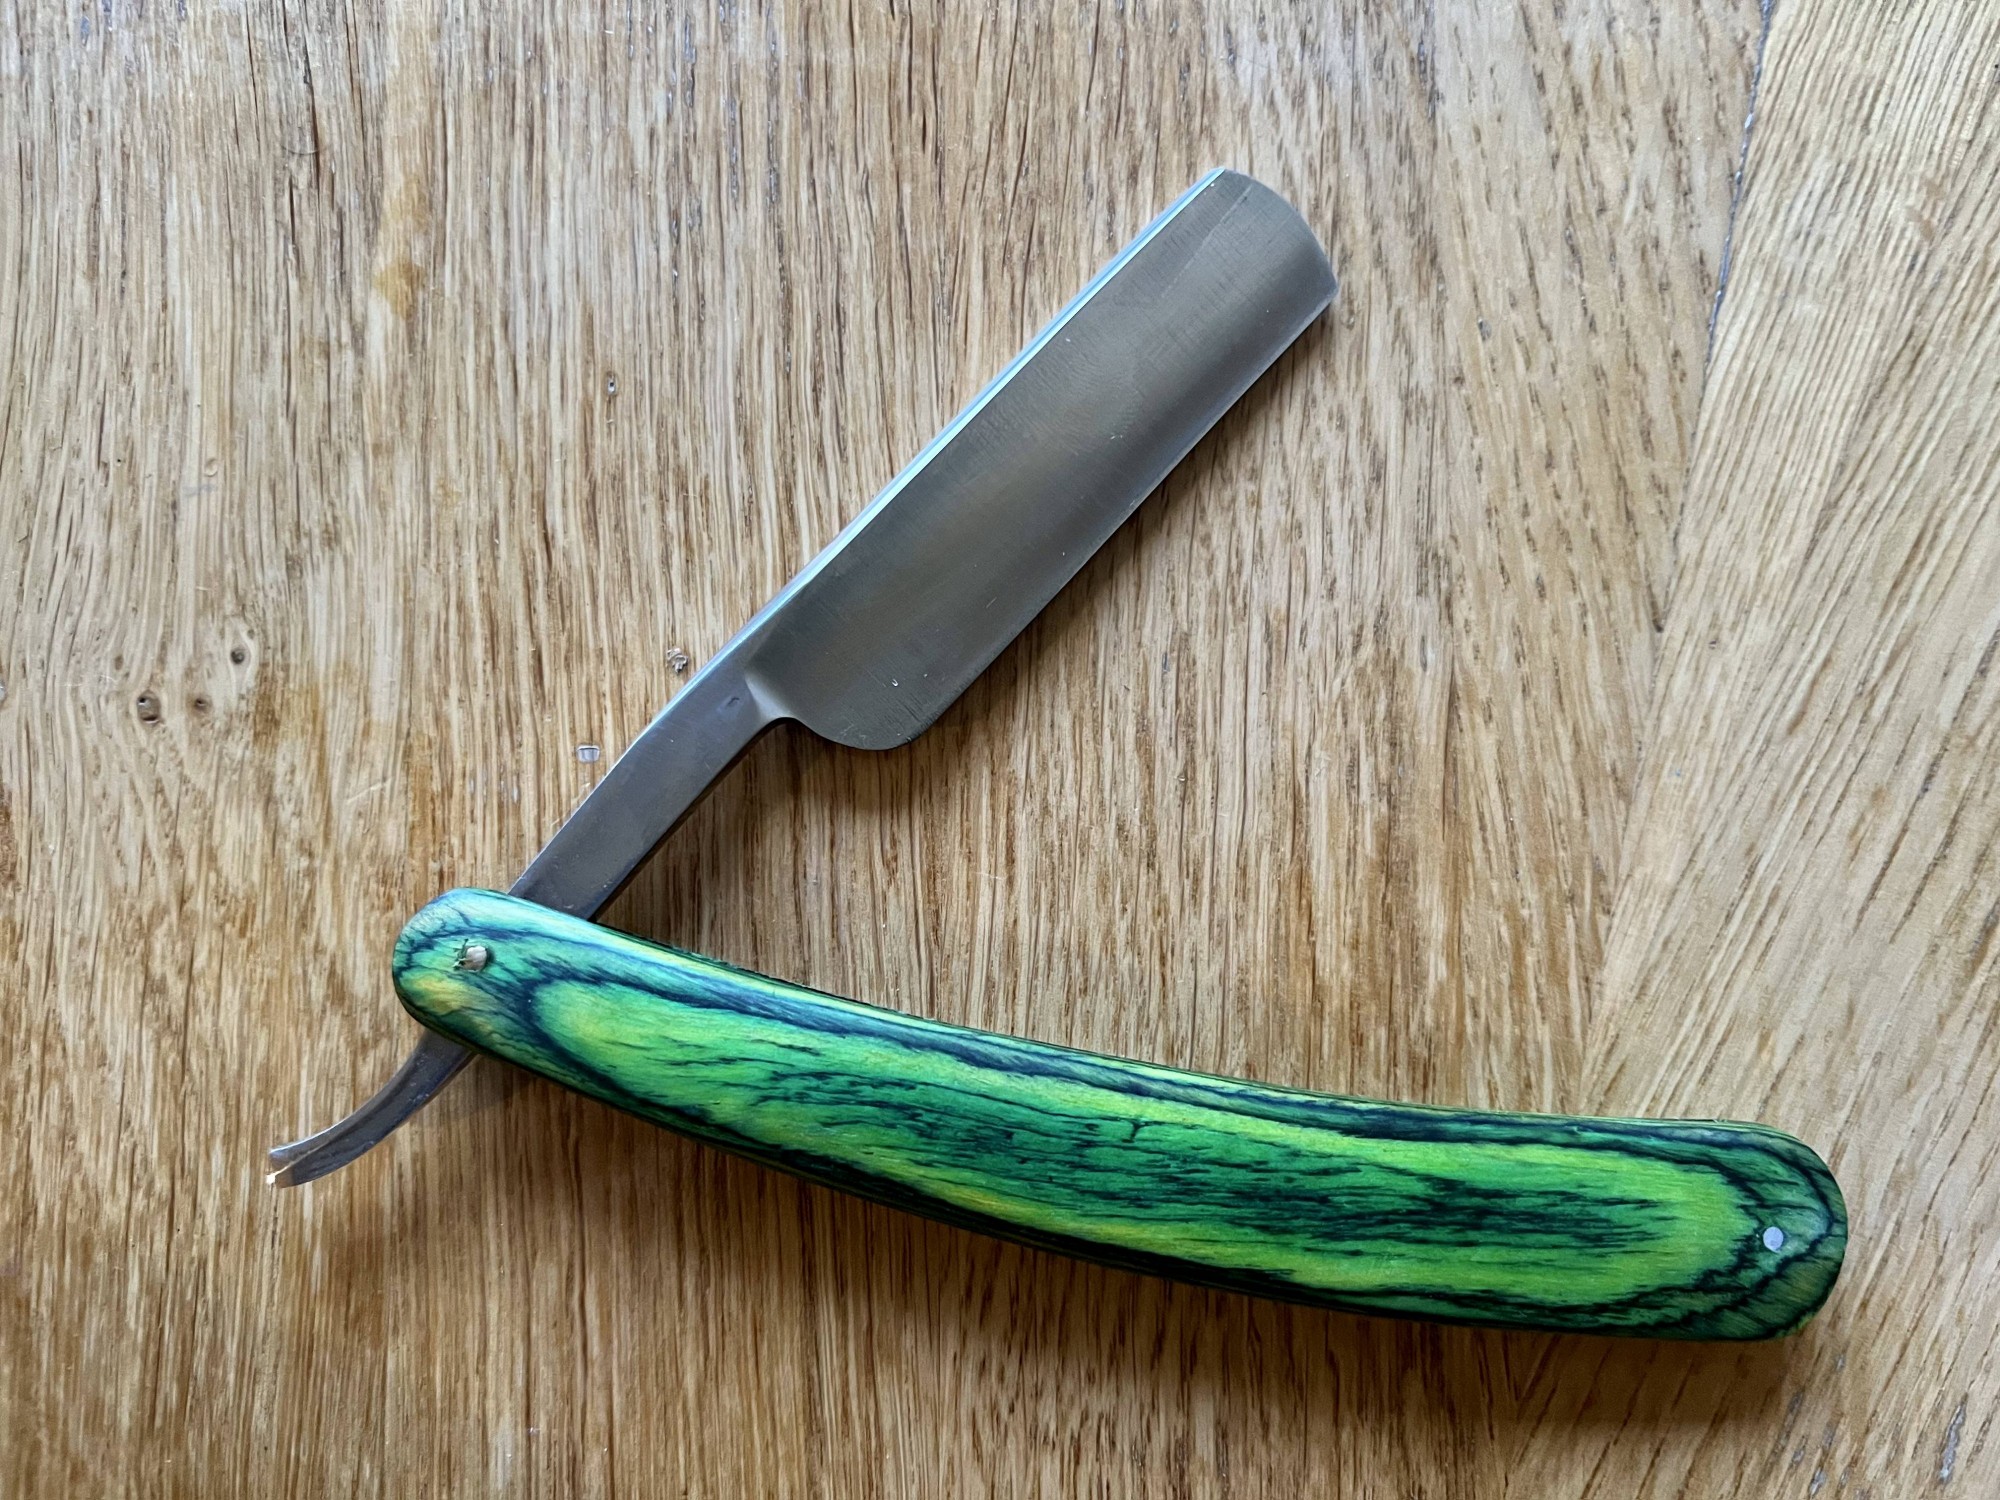 Ремень для правки опасной бритвы и ножа